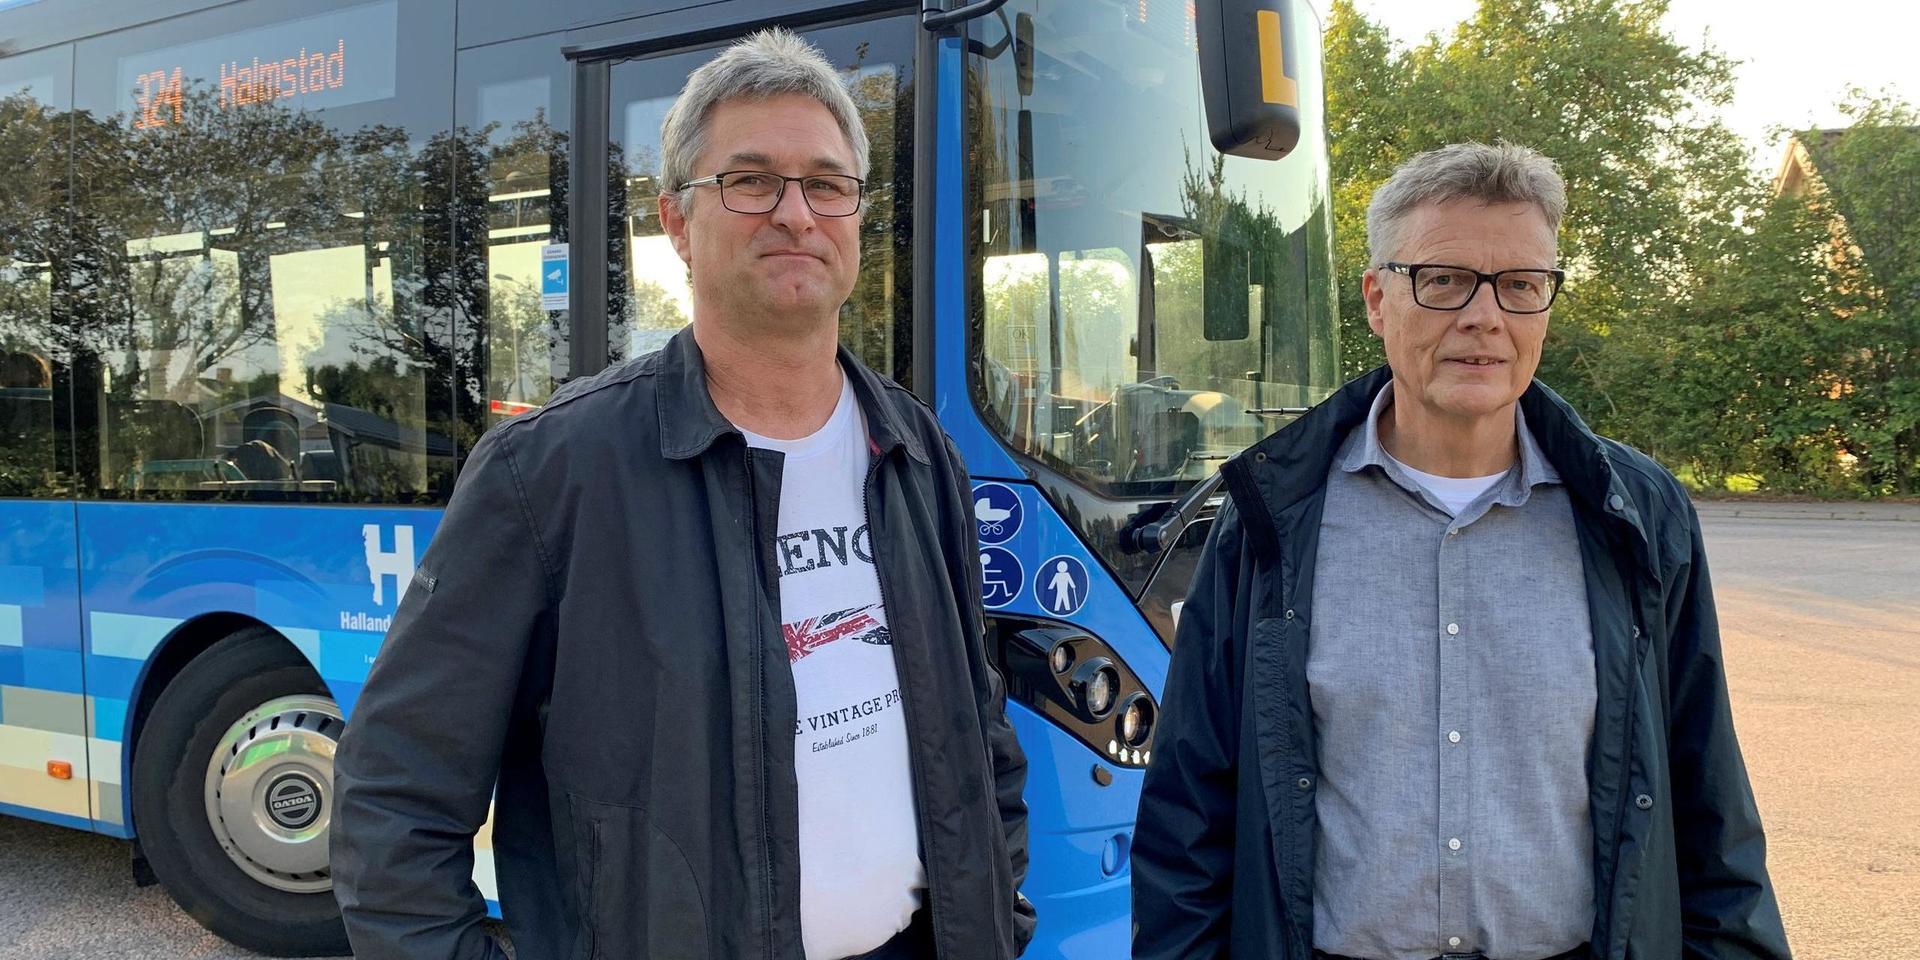 Jörgen Svensson och Göran Nilsson i Trönninge samhällsförening har varit något av förkämpar i striden för att ge Trönningeborna mer rättvisa biljettpriser. ”Det har tagit väldigt lång tid, men nu gläds vi”, säger de.